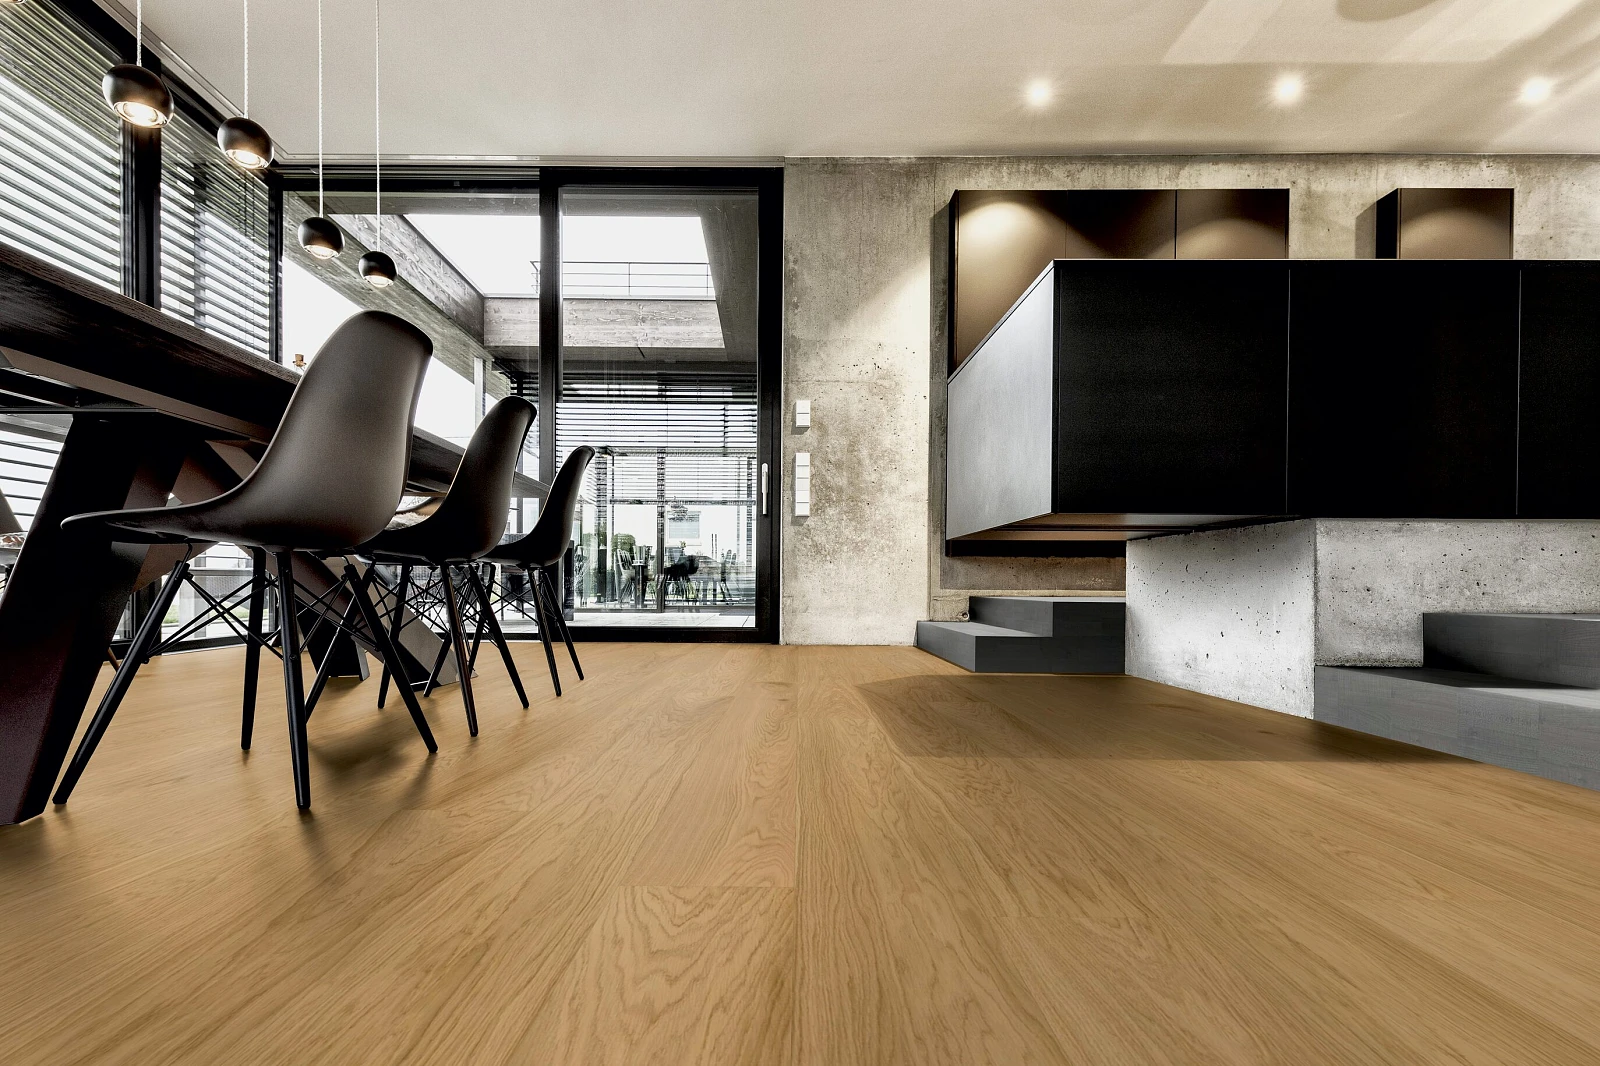 Drewniana podłoga w nowoczesnym salonie z żabiej perspektywy.